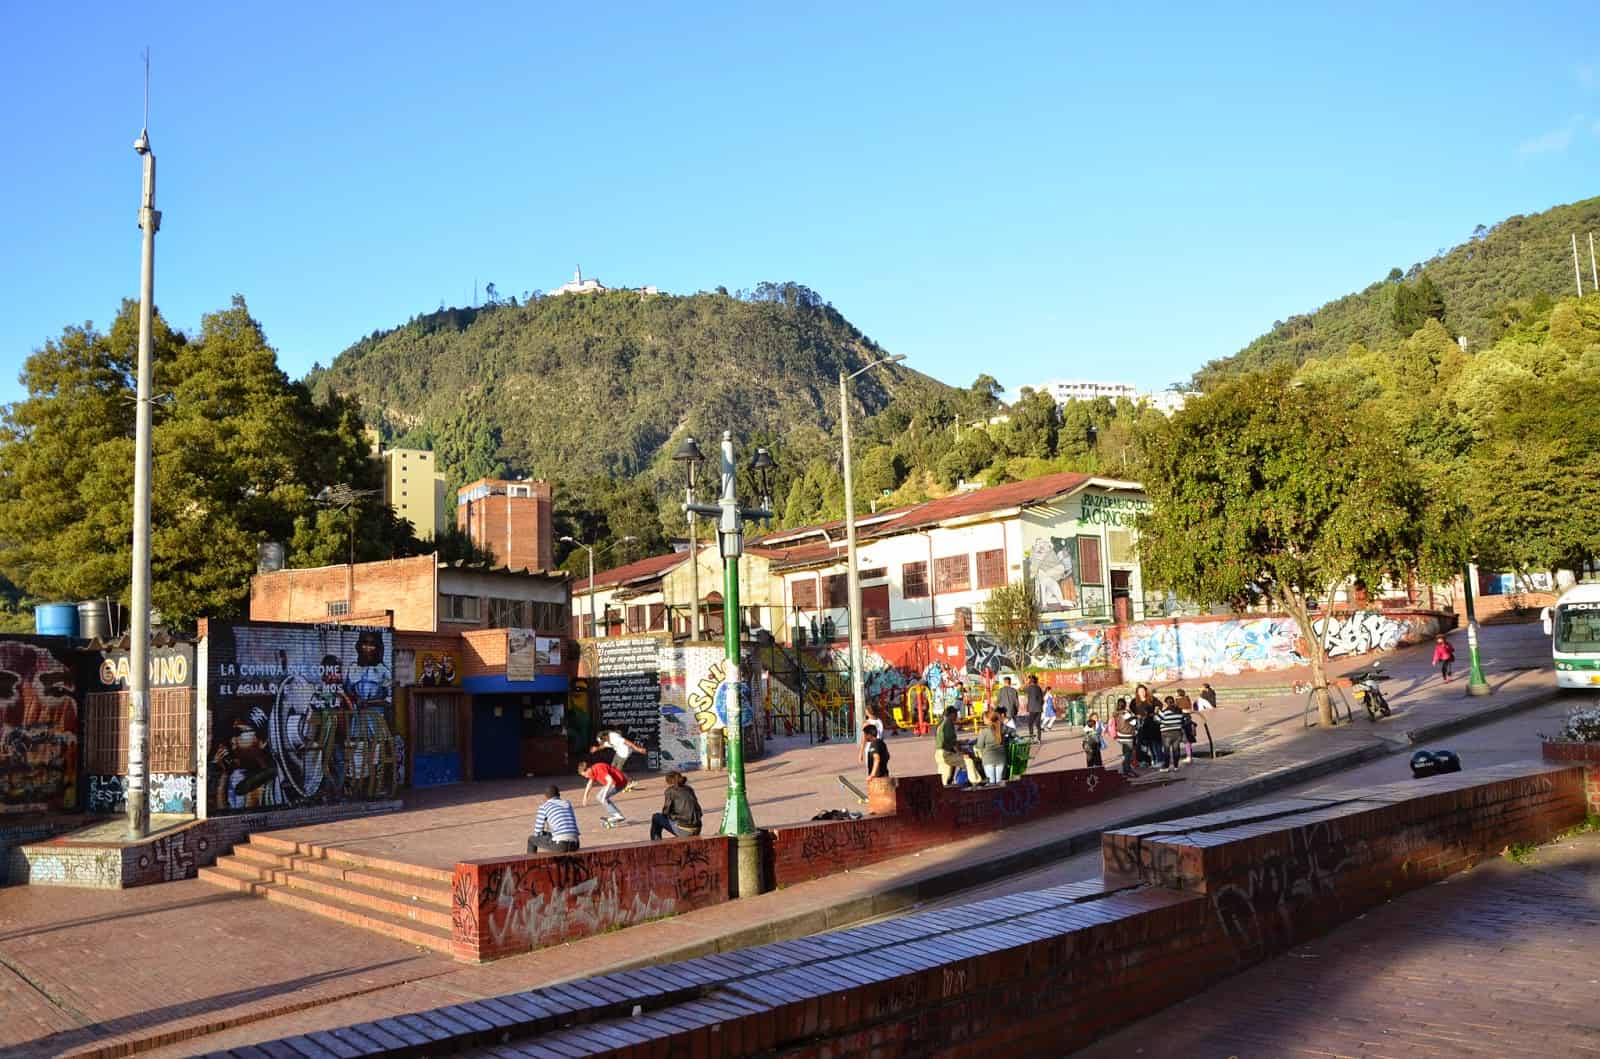 A plaza near Chorro de Quevedo now hosting a small market